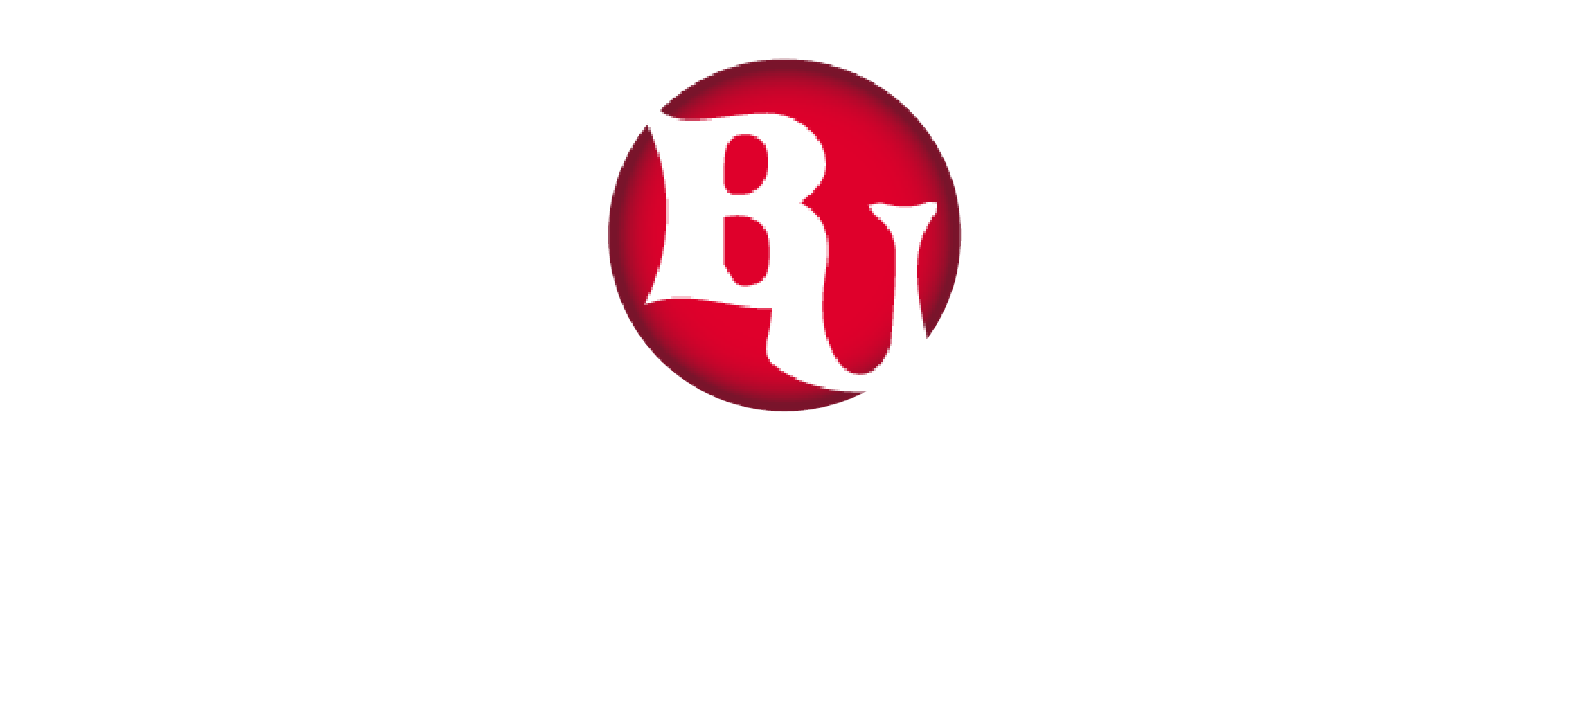 Logo Colegio Belgrano Uno